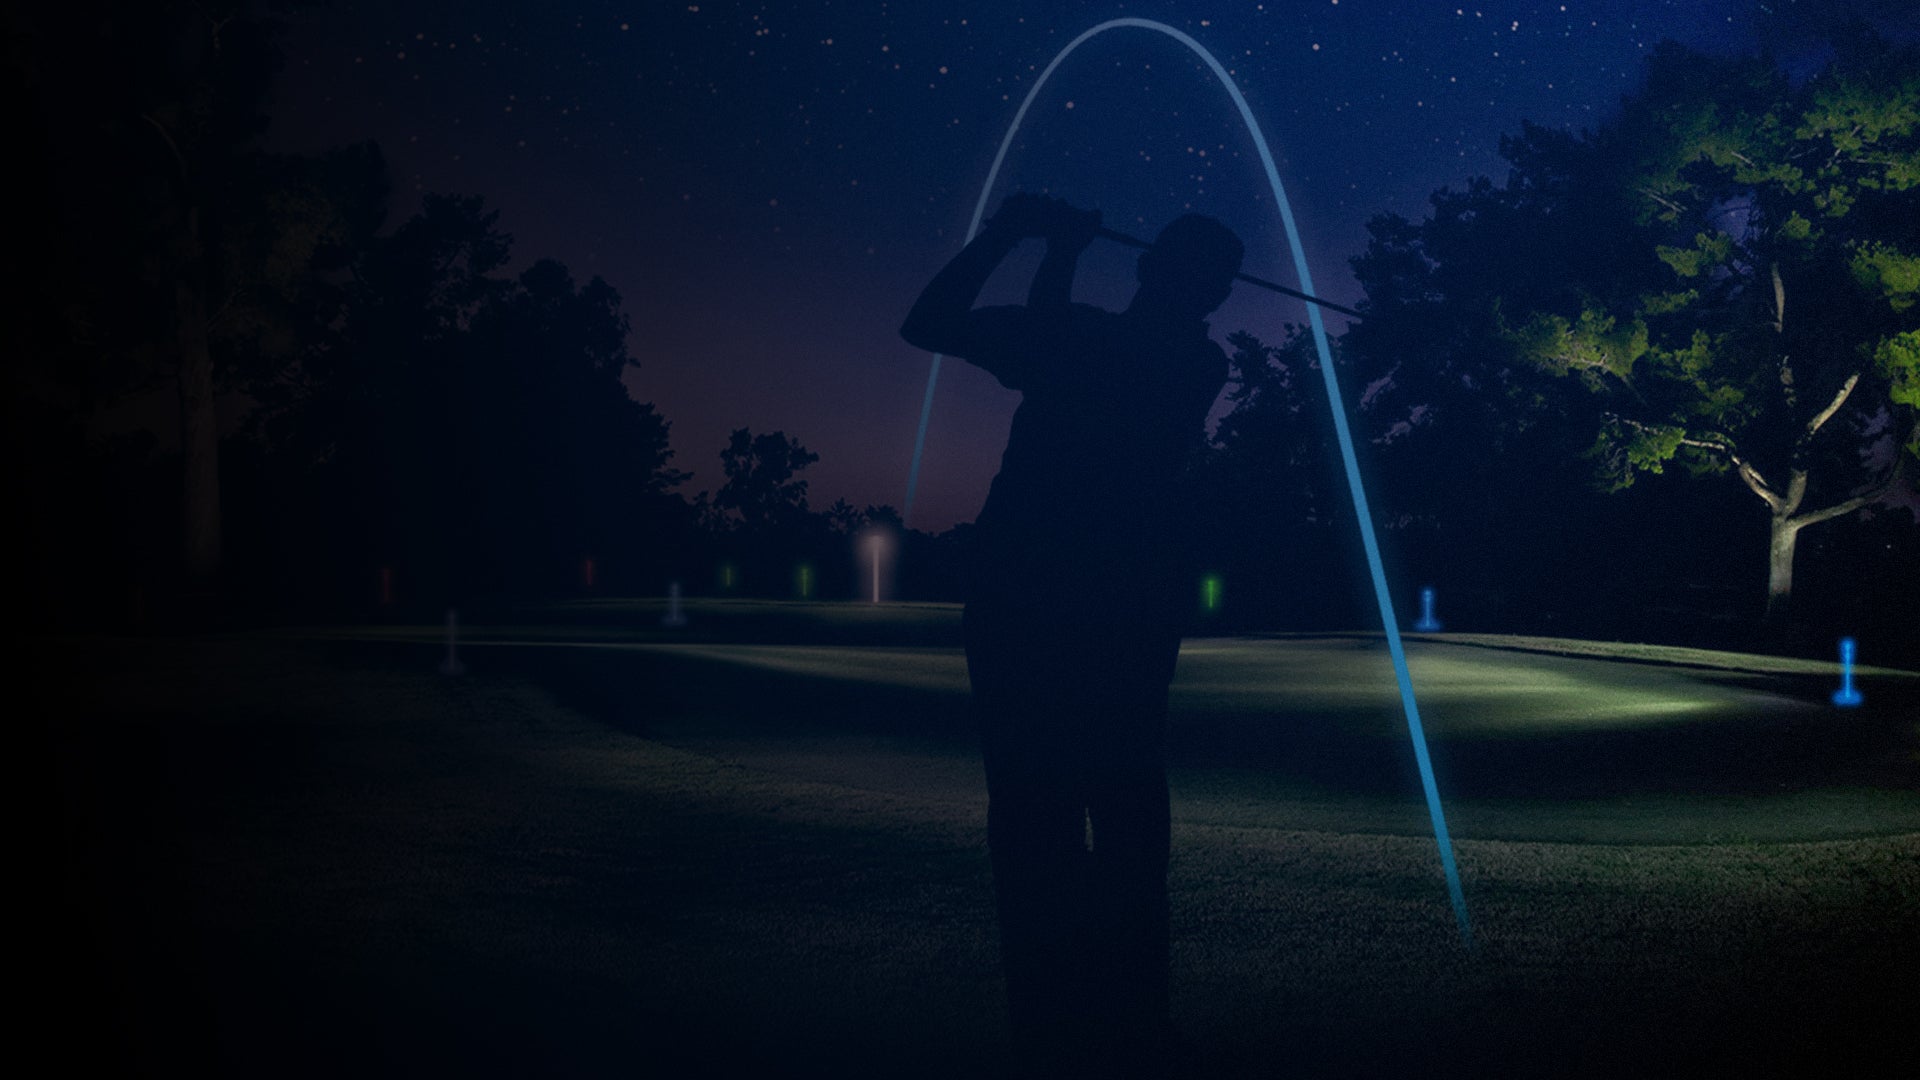 LIT Night Golf: Illuminating the Fairways After Dark